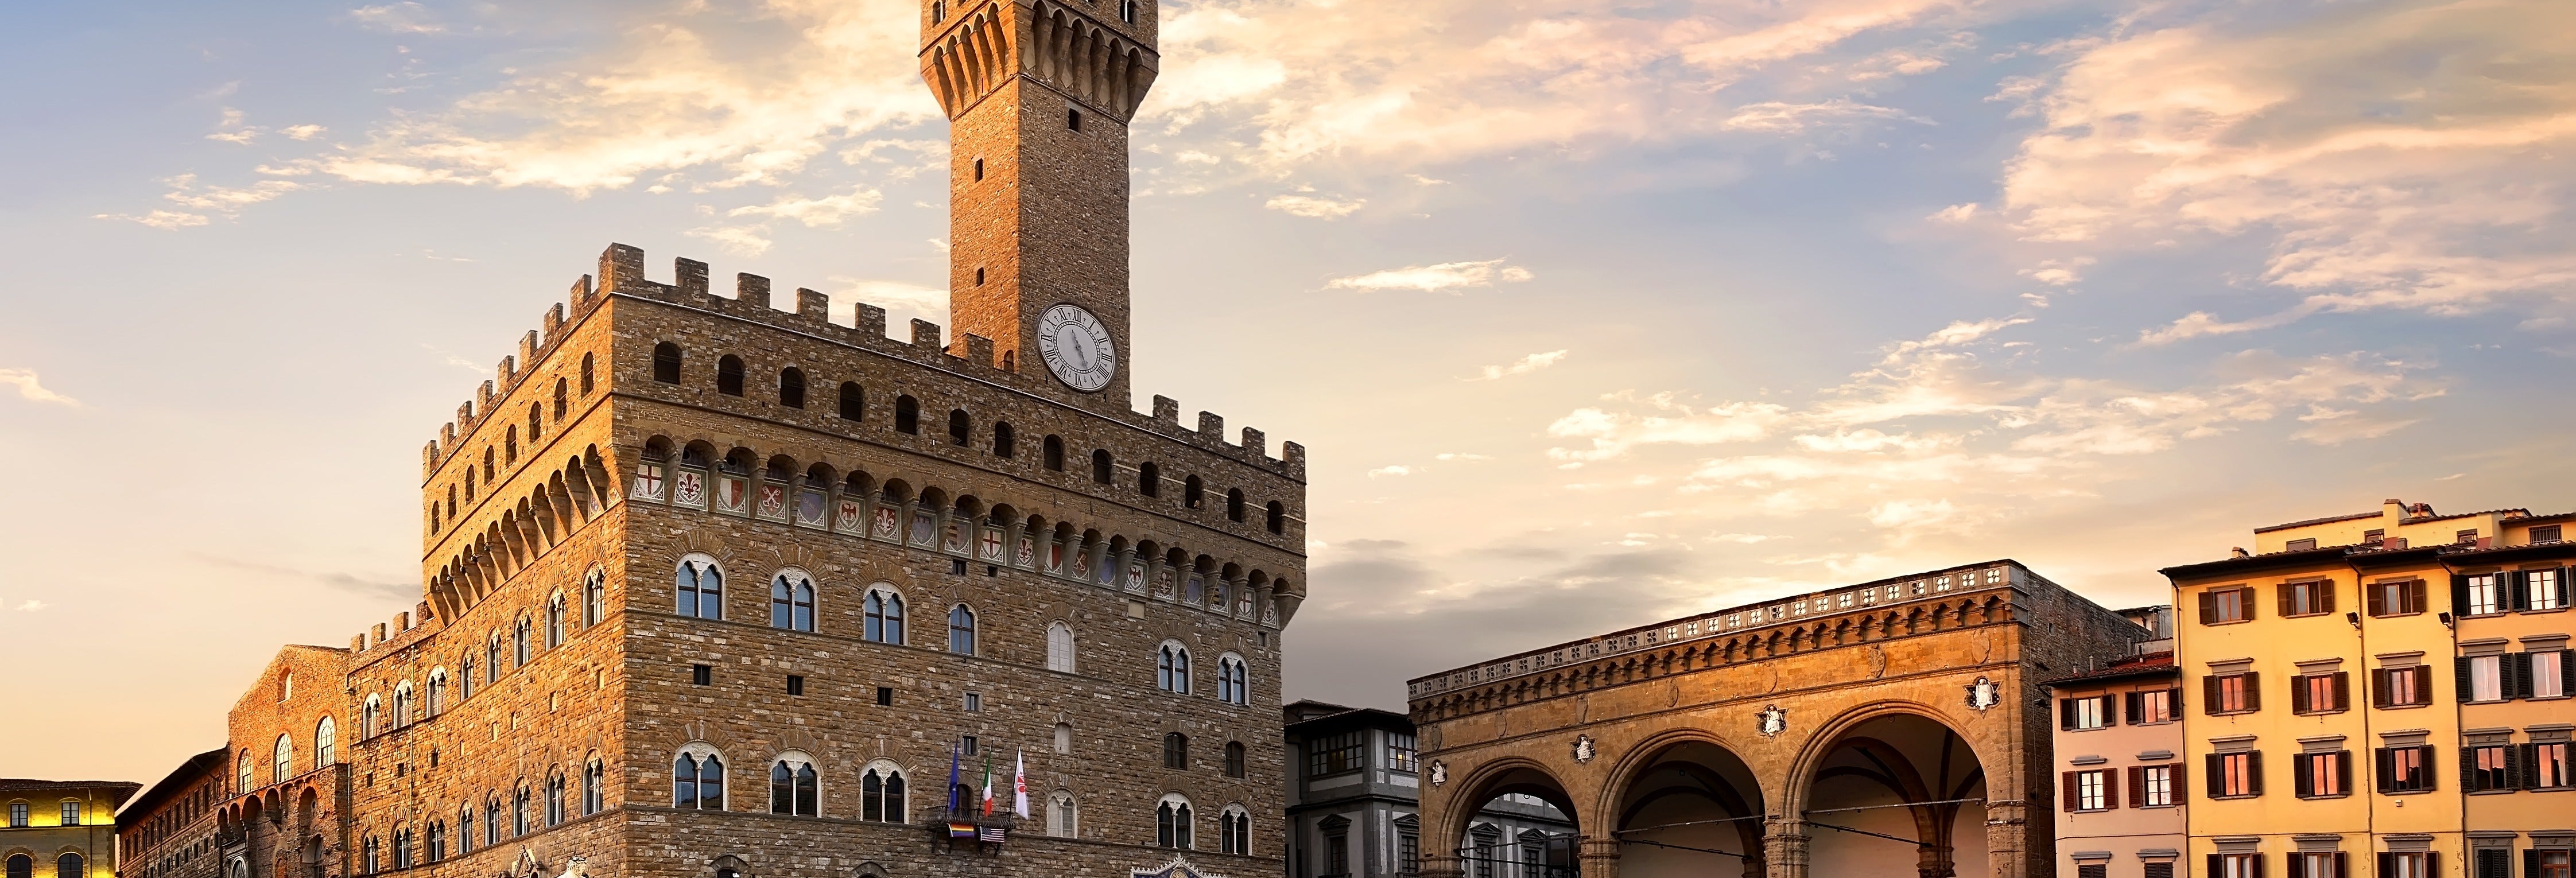 Visita guiada pelo Palazzo Vecchio